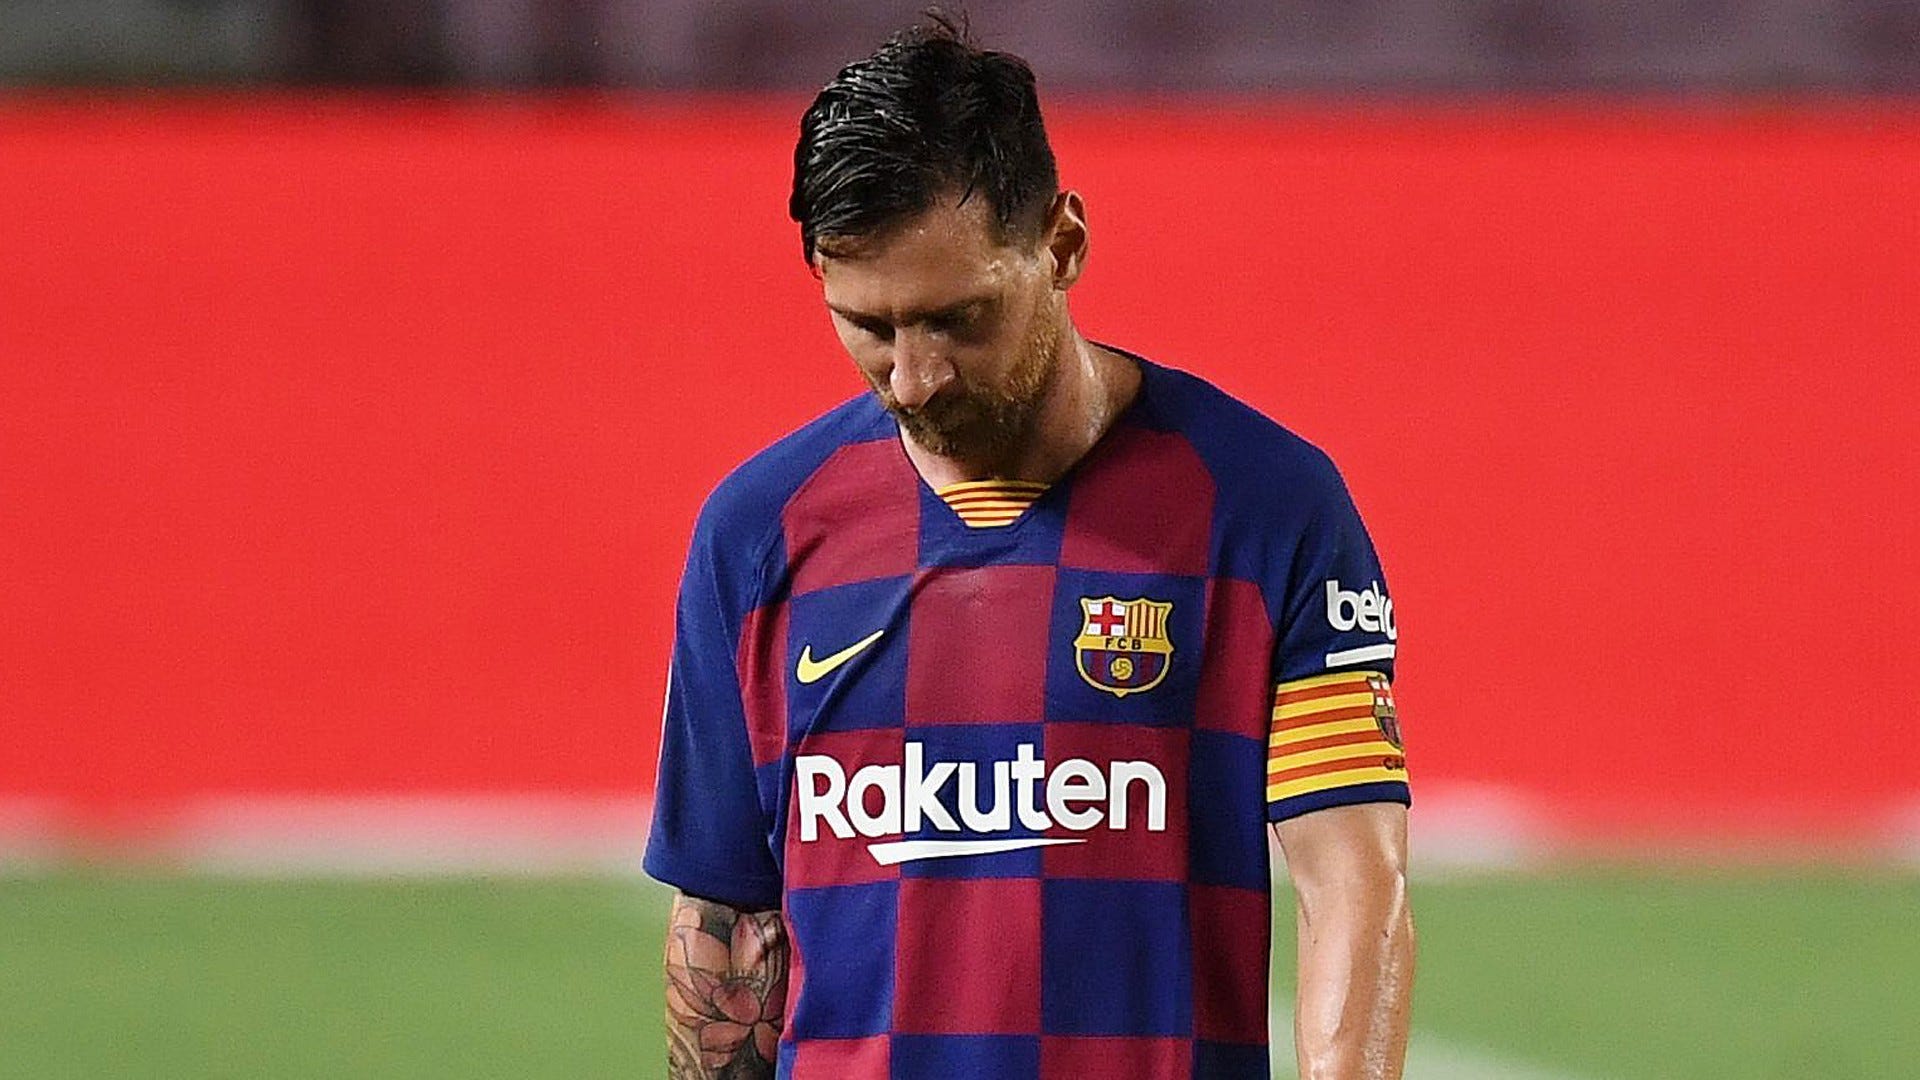 Để được chiêm ngưỡng Barca và những thành công không thể thiếu của Messi, hãy đến với bức hình liên quan đến sự phụ thuộc của đội bóng vào siêu sao này. Đó chắc chắn là một trải nghiệm tuyệt vời mà bạn không thể bỏ lỡ.